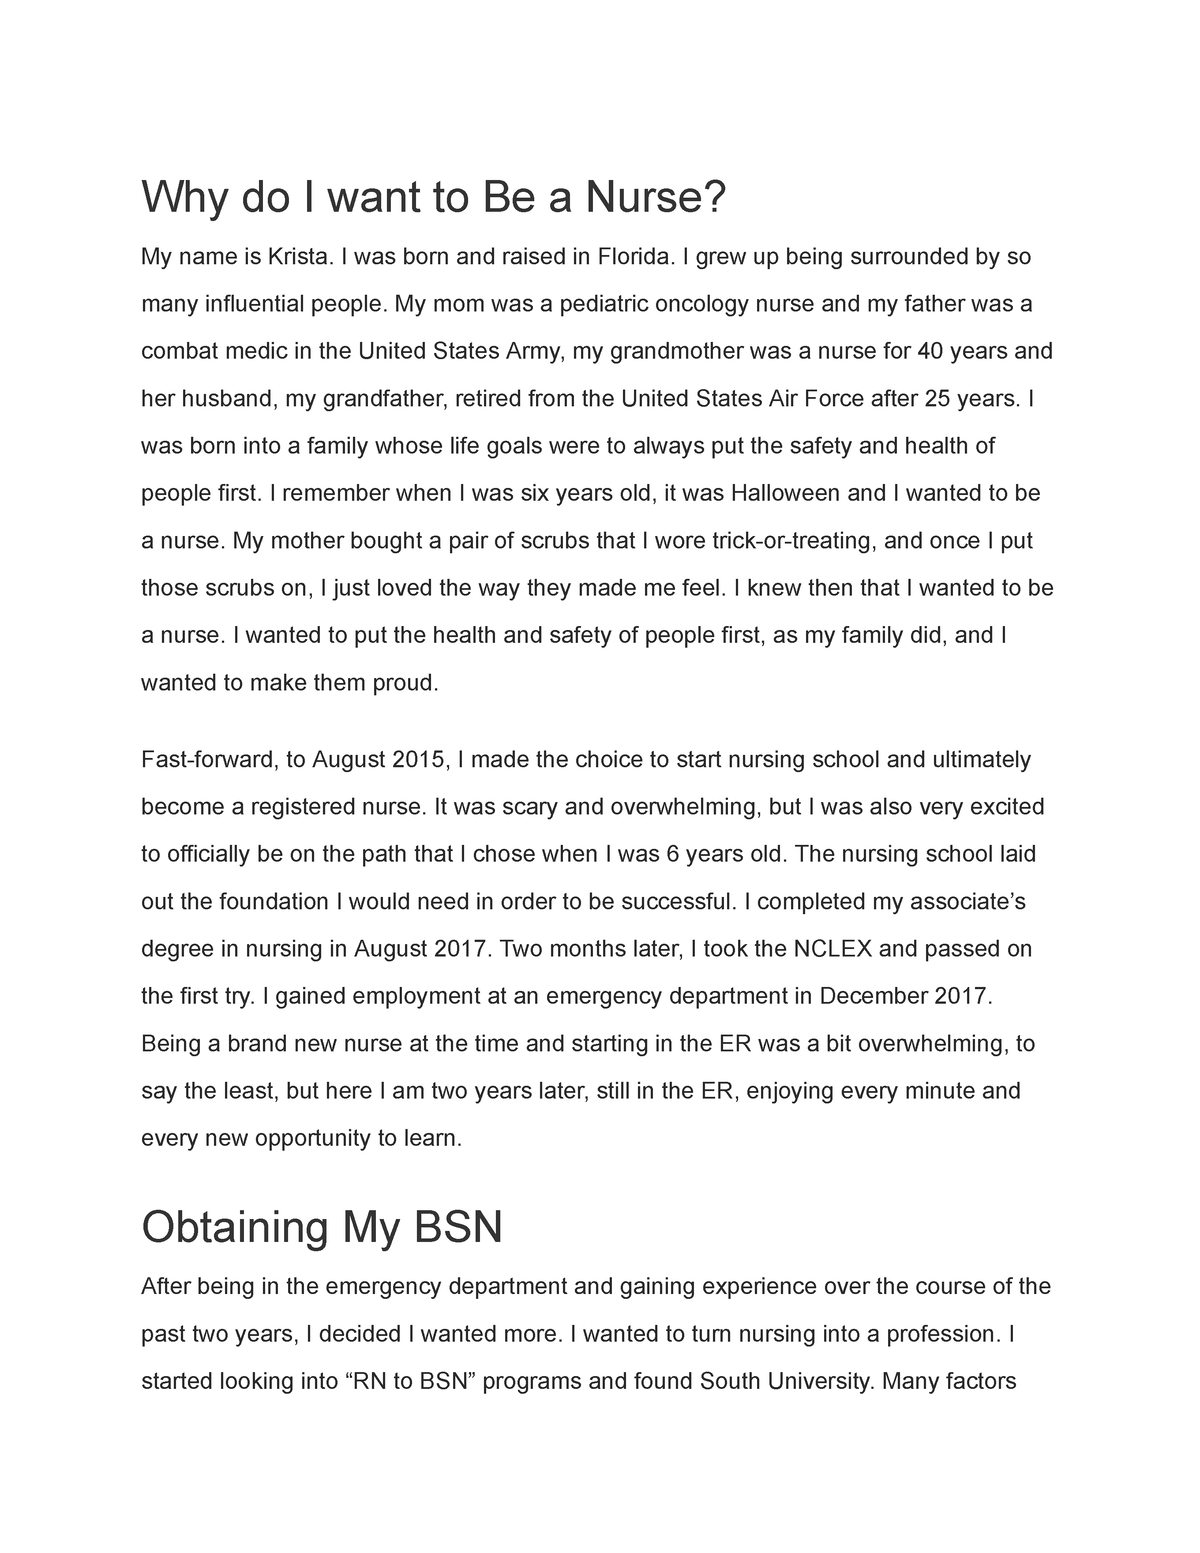 why i love being a nurse essay